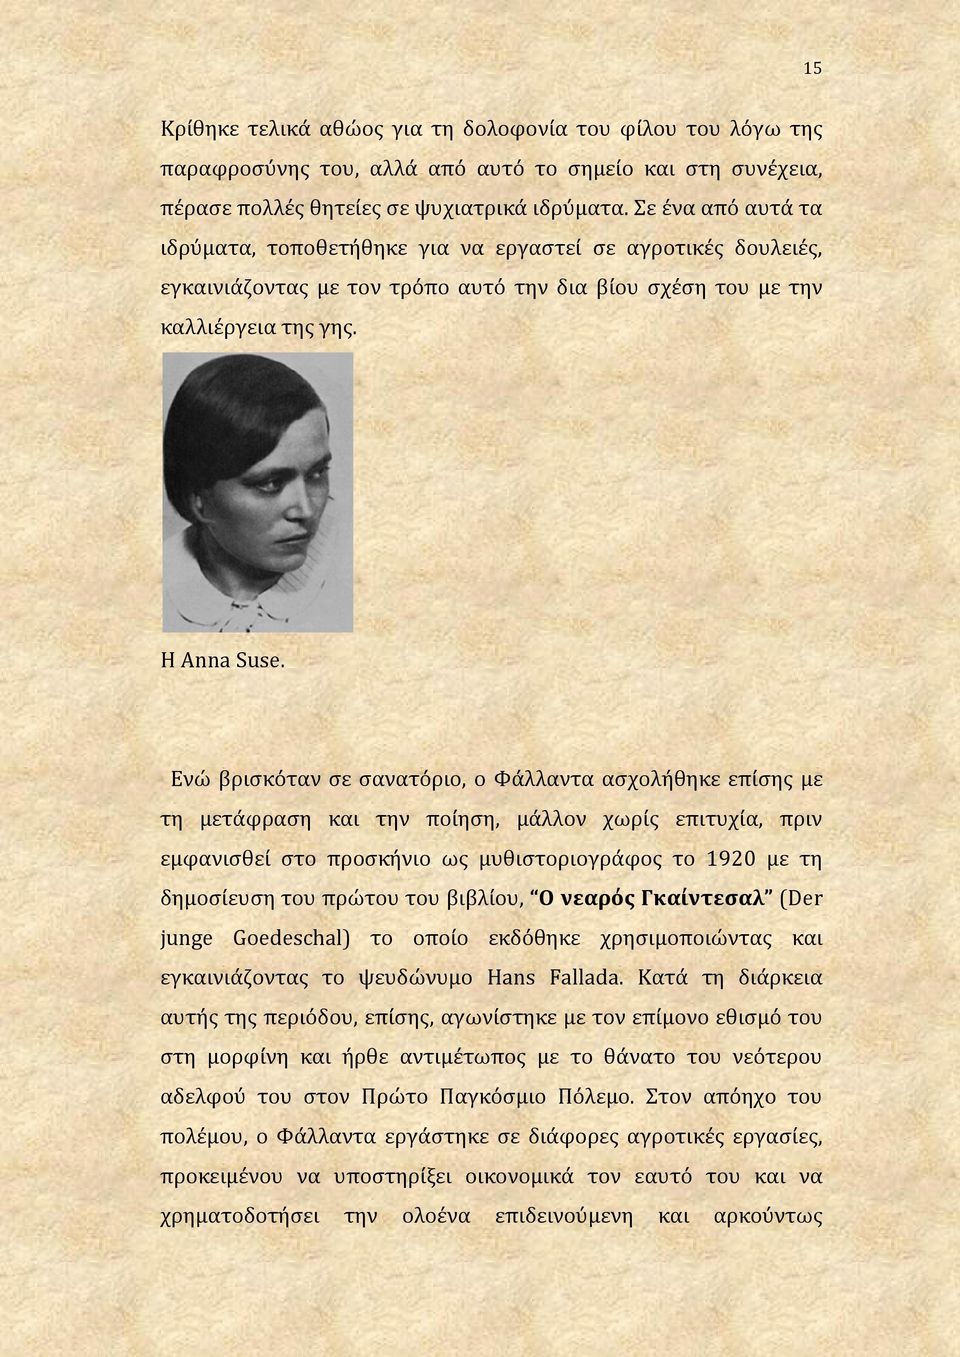 Ενώ βρισκόταν σε σανατόριο, ο Φάλλαντα ασχολήθηκε επίσης με τη μετάφραση και την ποίηση, μάλλον χωρίς επιτυχία, πριν εμφανισθεί στο προσκήνιο ως μυθιστοριογράφος το 1920 με τη δημοσίευση του πρώτου